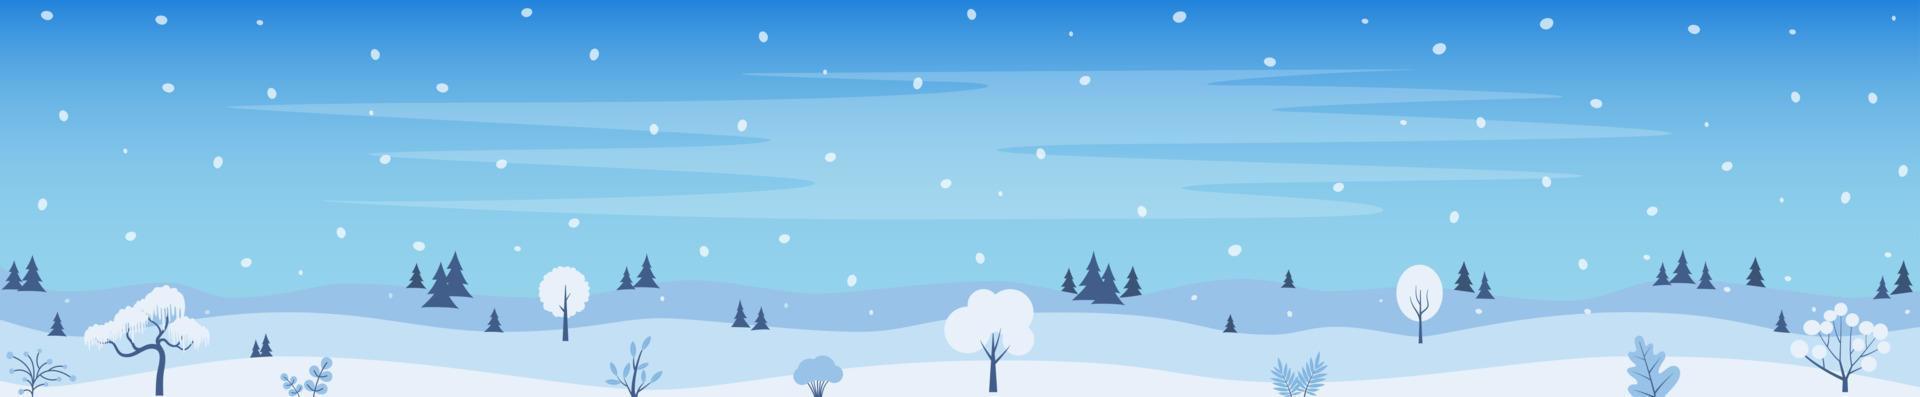 fundo de paisagem de inverno, pinheiros, neve, bosques. modelo de banner horizontal com fundo nevado de paisagem de inverno. ilustração vetorial. vetor